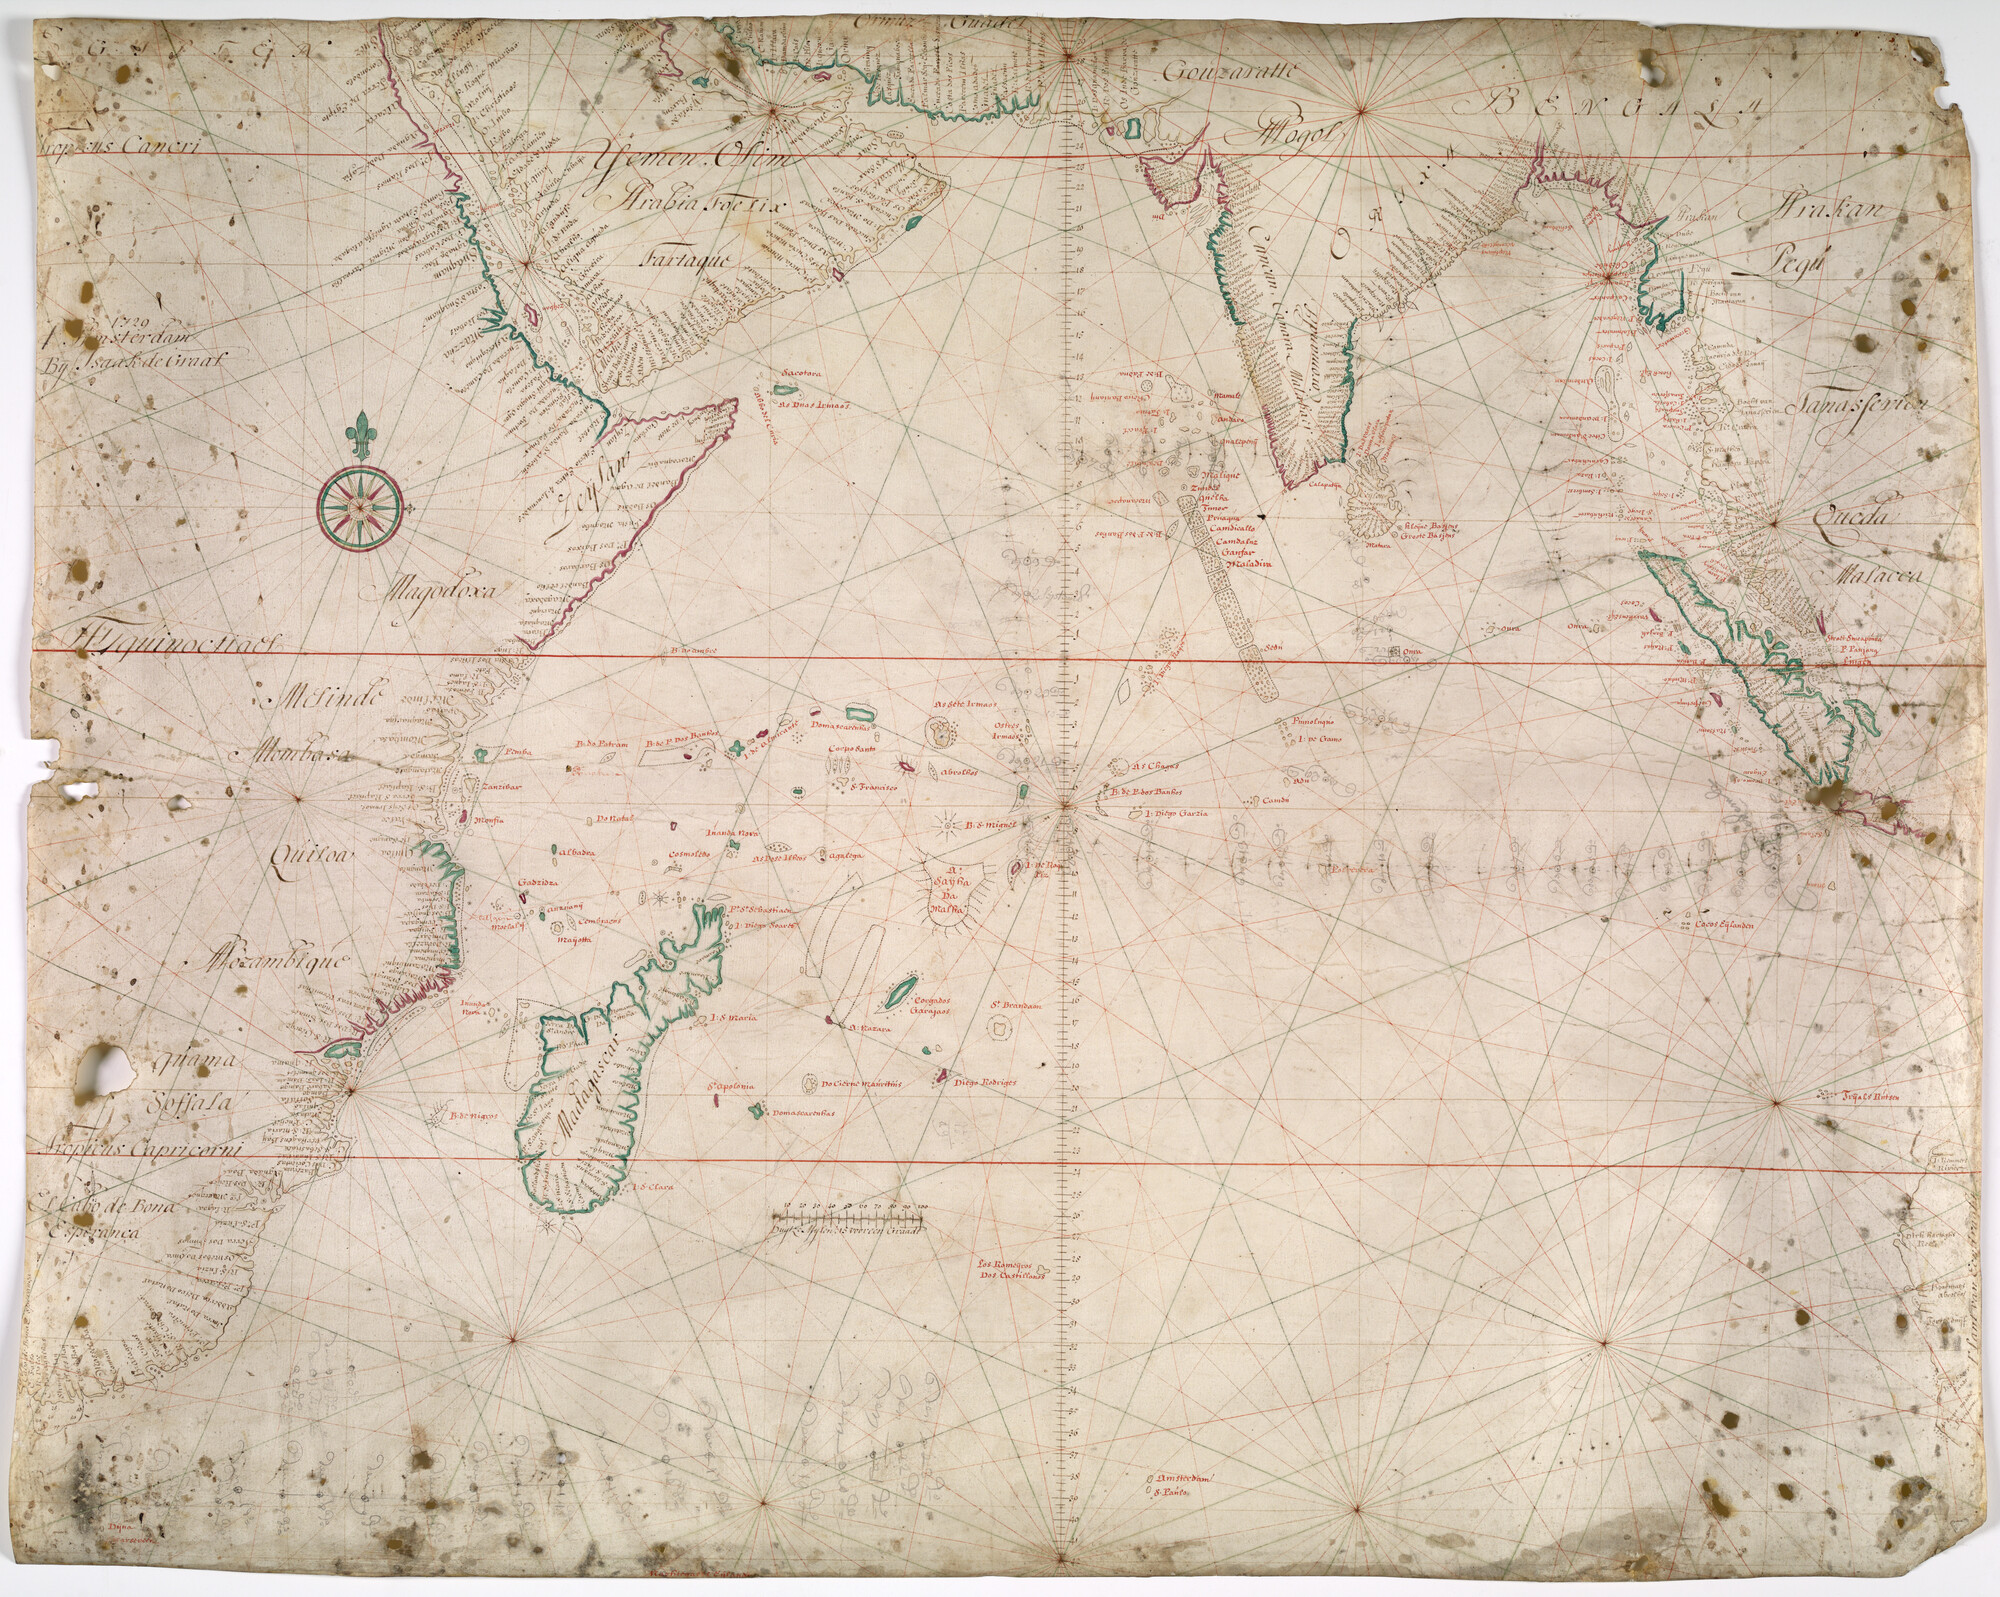 A.0145(127)4; Zeekaart van de Indische Oceaan met de oostkust van Afrika, India en een deel van de westkust van Australië (Land van de Eendracht); perkamentkaart